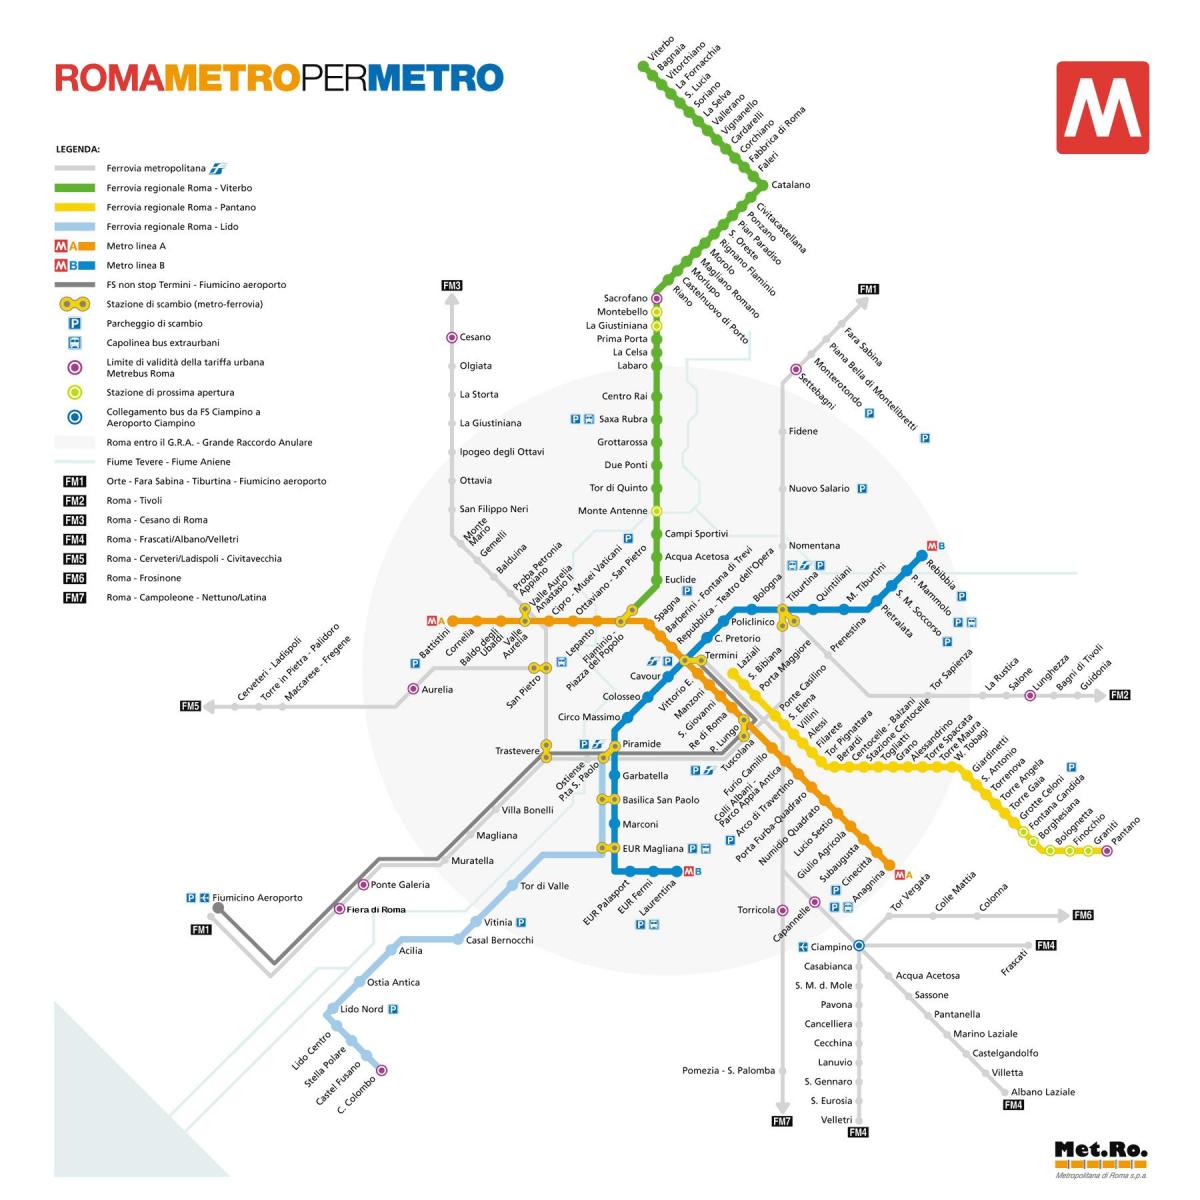 Mapa metra w Rzymie 